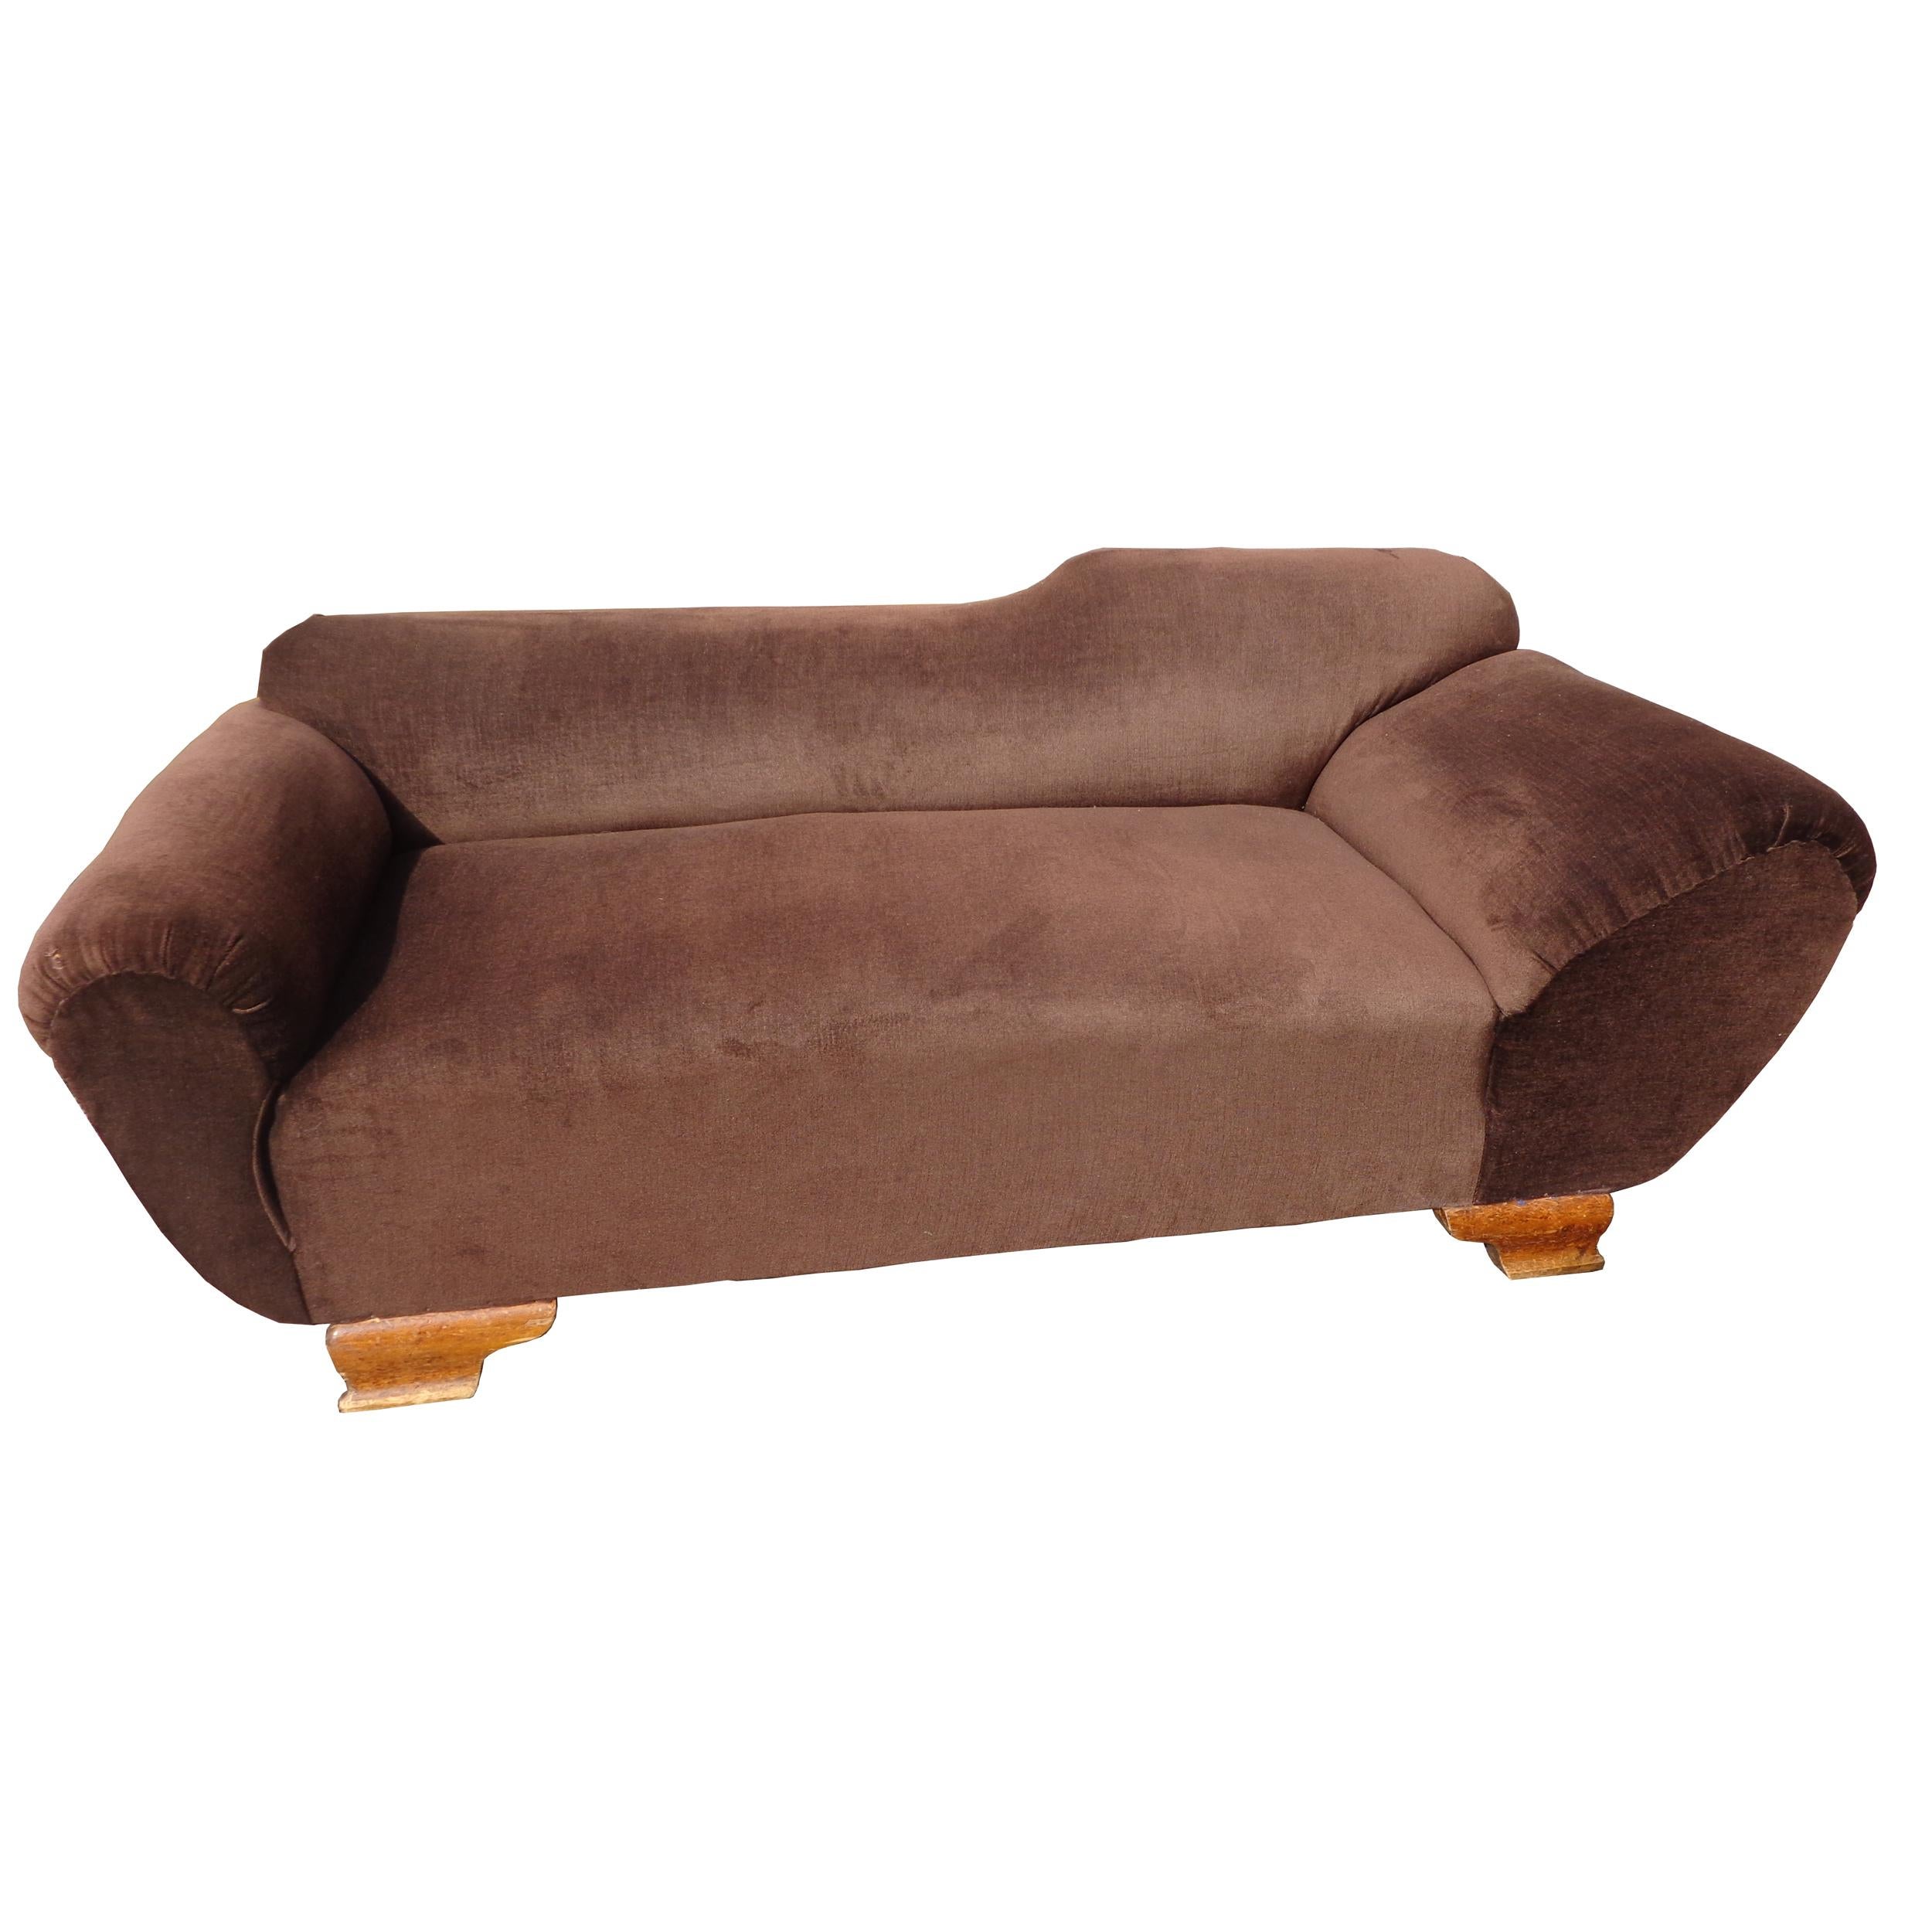 European 6.5' Art Deco Chaise Sofa